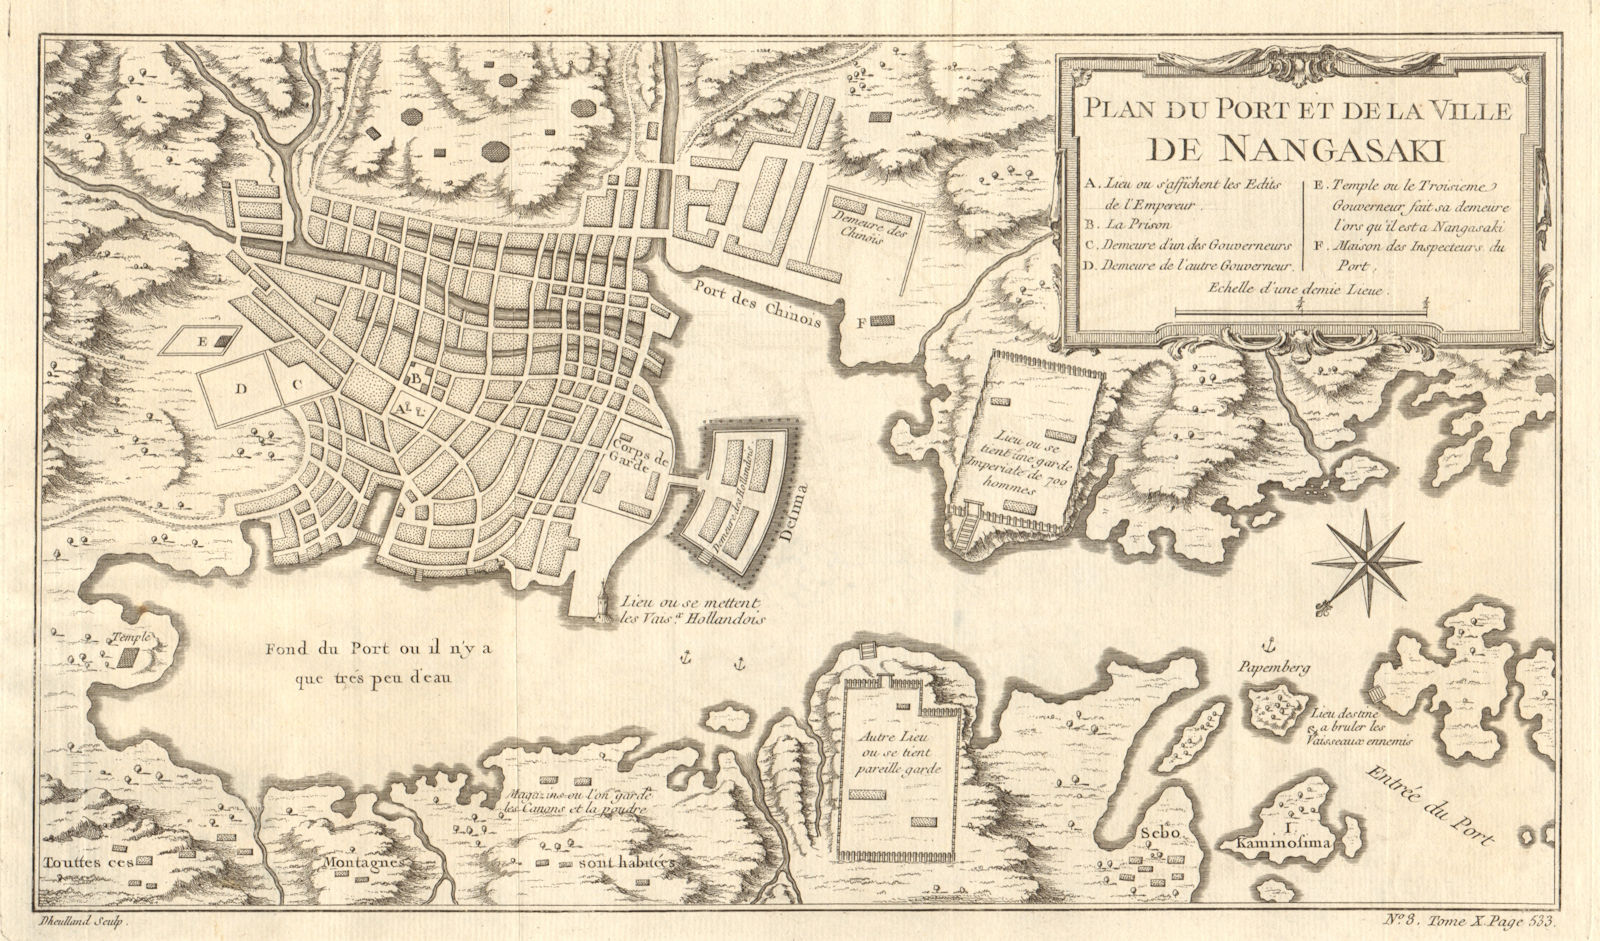 'Plan du port et de la ville de Nangasaki'. Nagasaki, Japan. BELLIN 1752 map